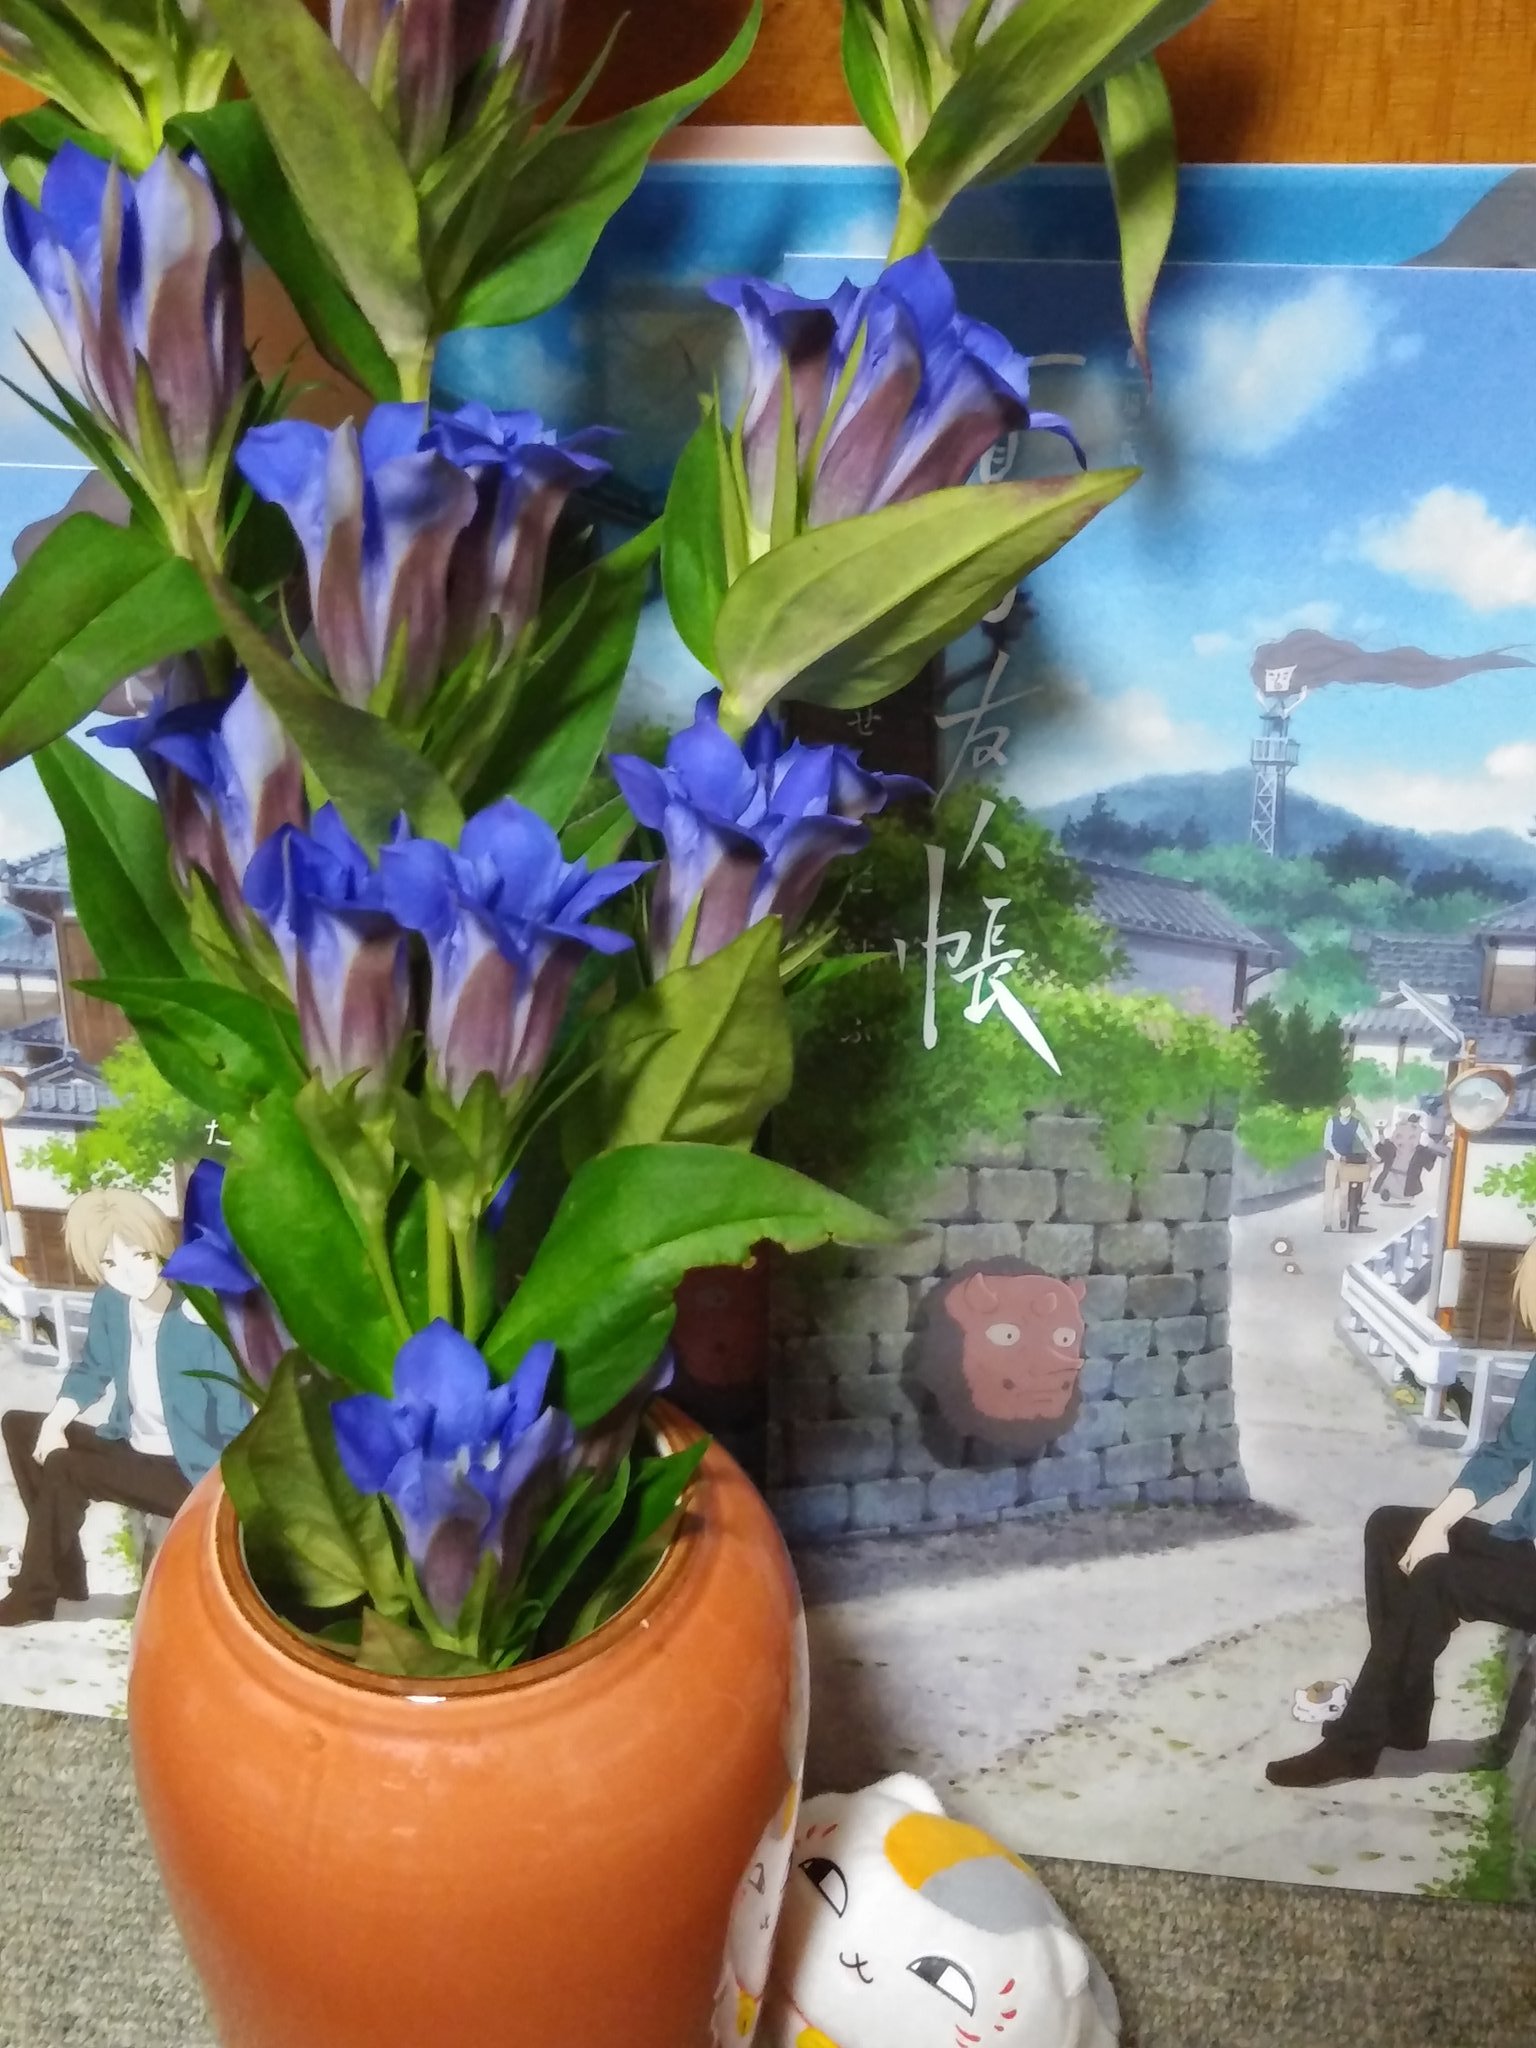 Tomokuma 市場まつりで 竜胆 リンドウ を買ってきた 花の色で一番好きな色 花言葉は 貴方の悲しみに寄り添う そしてリンドウと言えば 劇場版 夏目友人帳 うつせみに結ぶ 50万人動員おめでとうございます もう一回観にに行けるかなあ